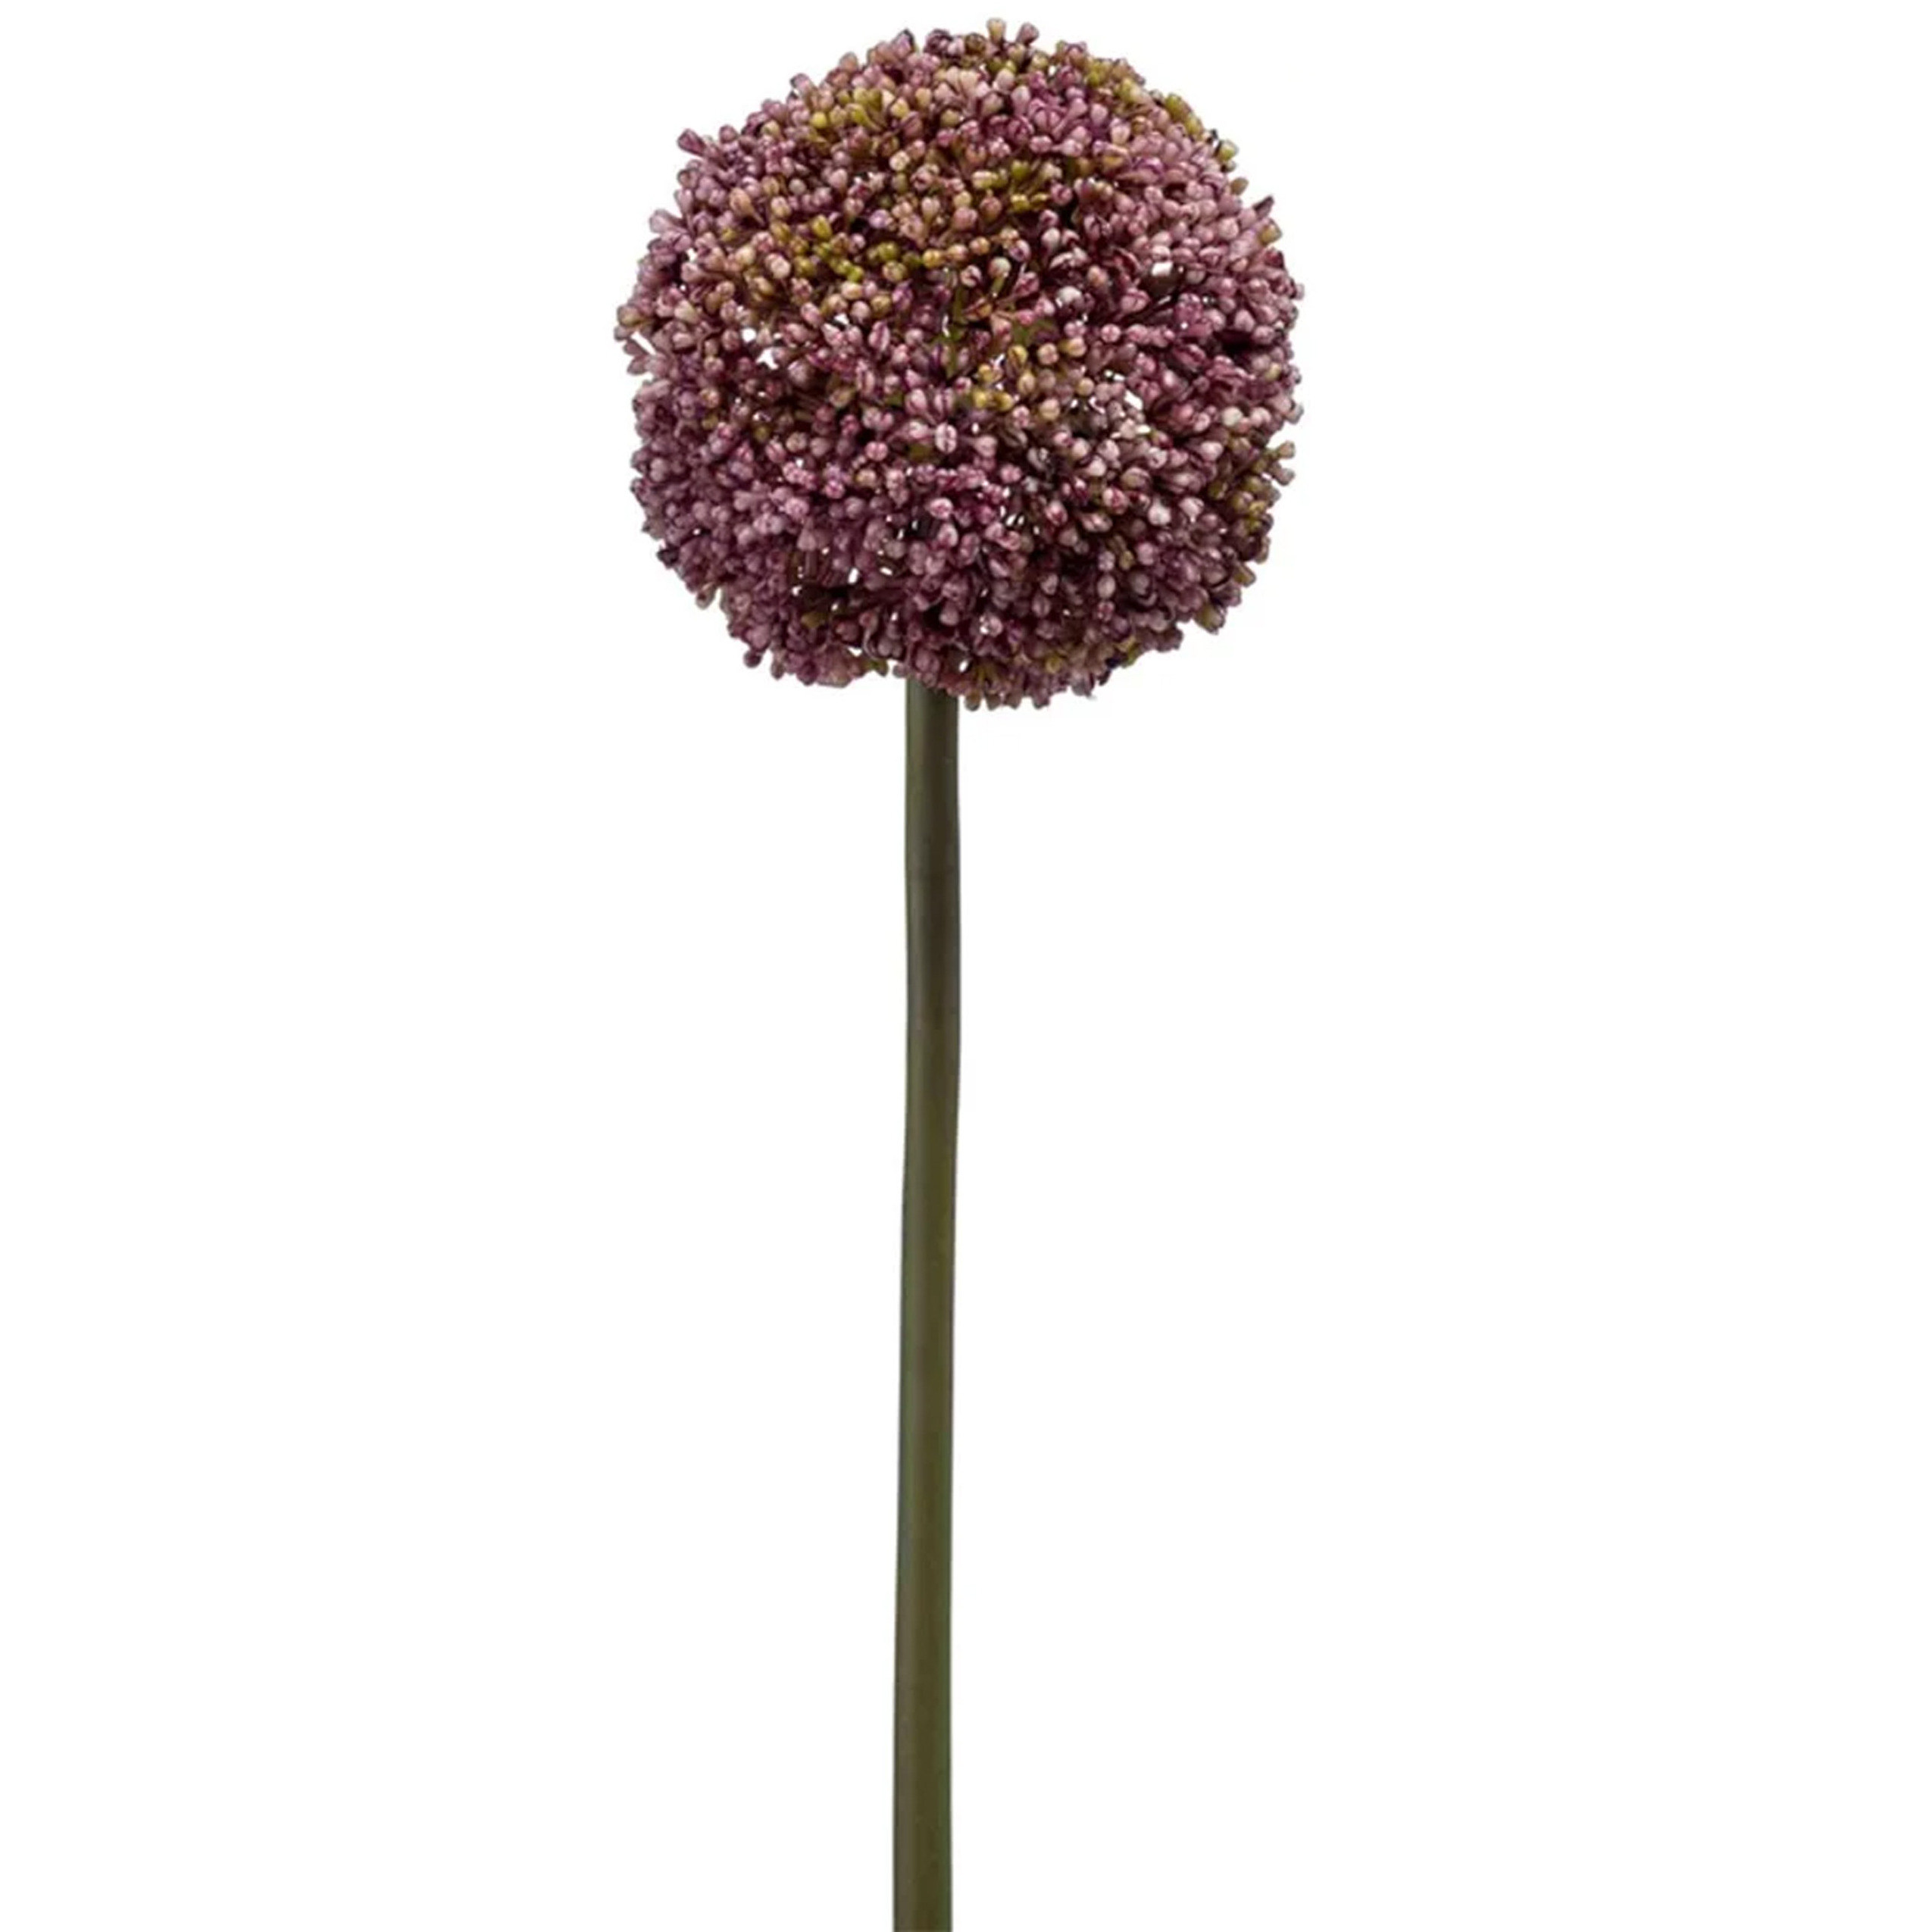 Allium-Sierui kunstbloem losse steel paars 75 cm Natuurlijke uitstraling